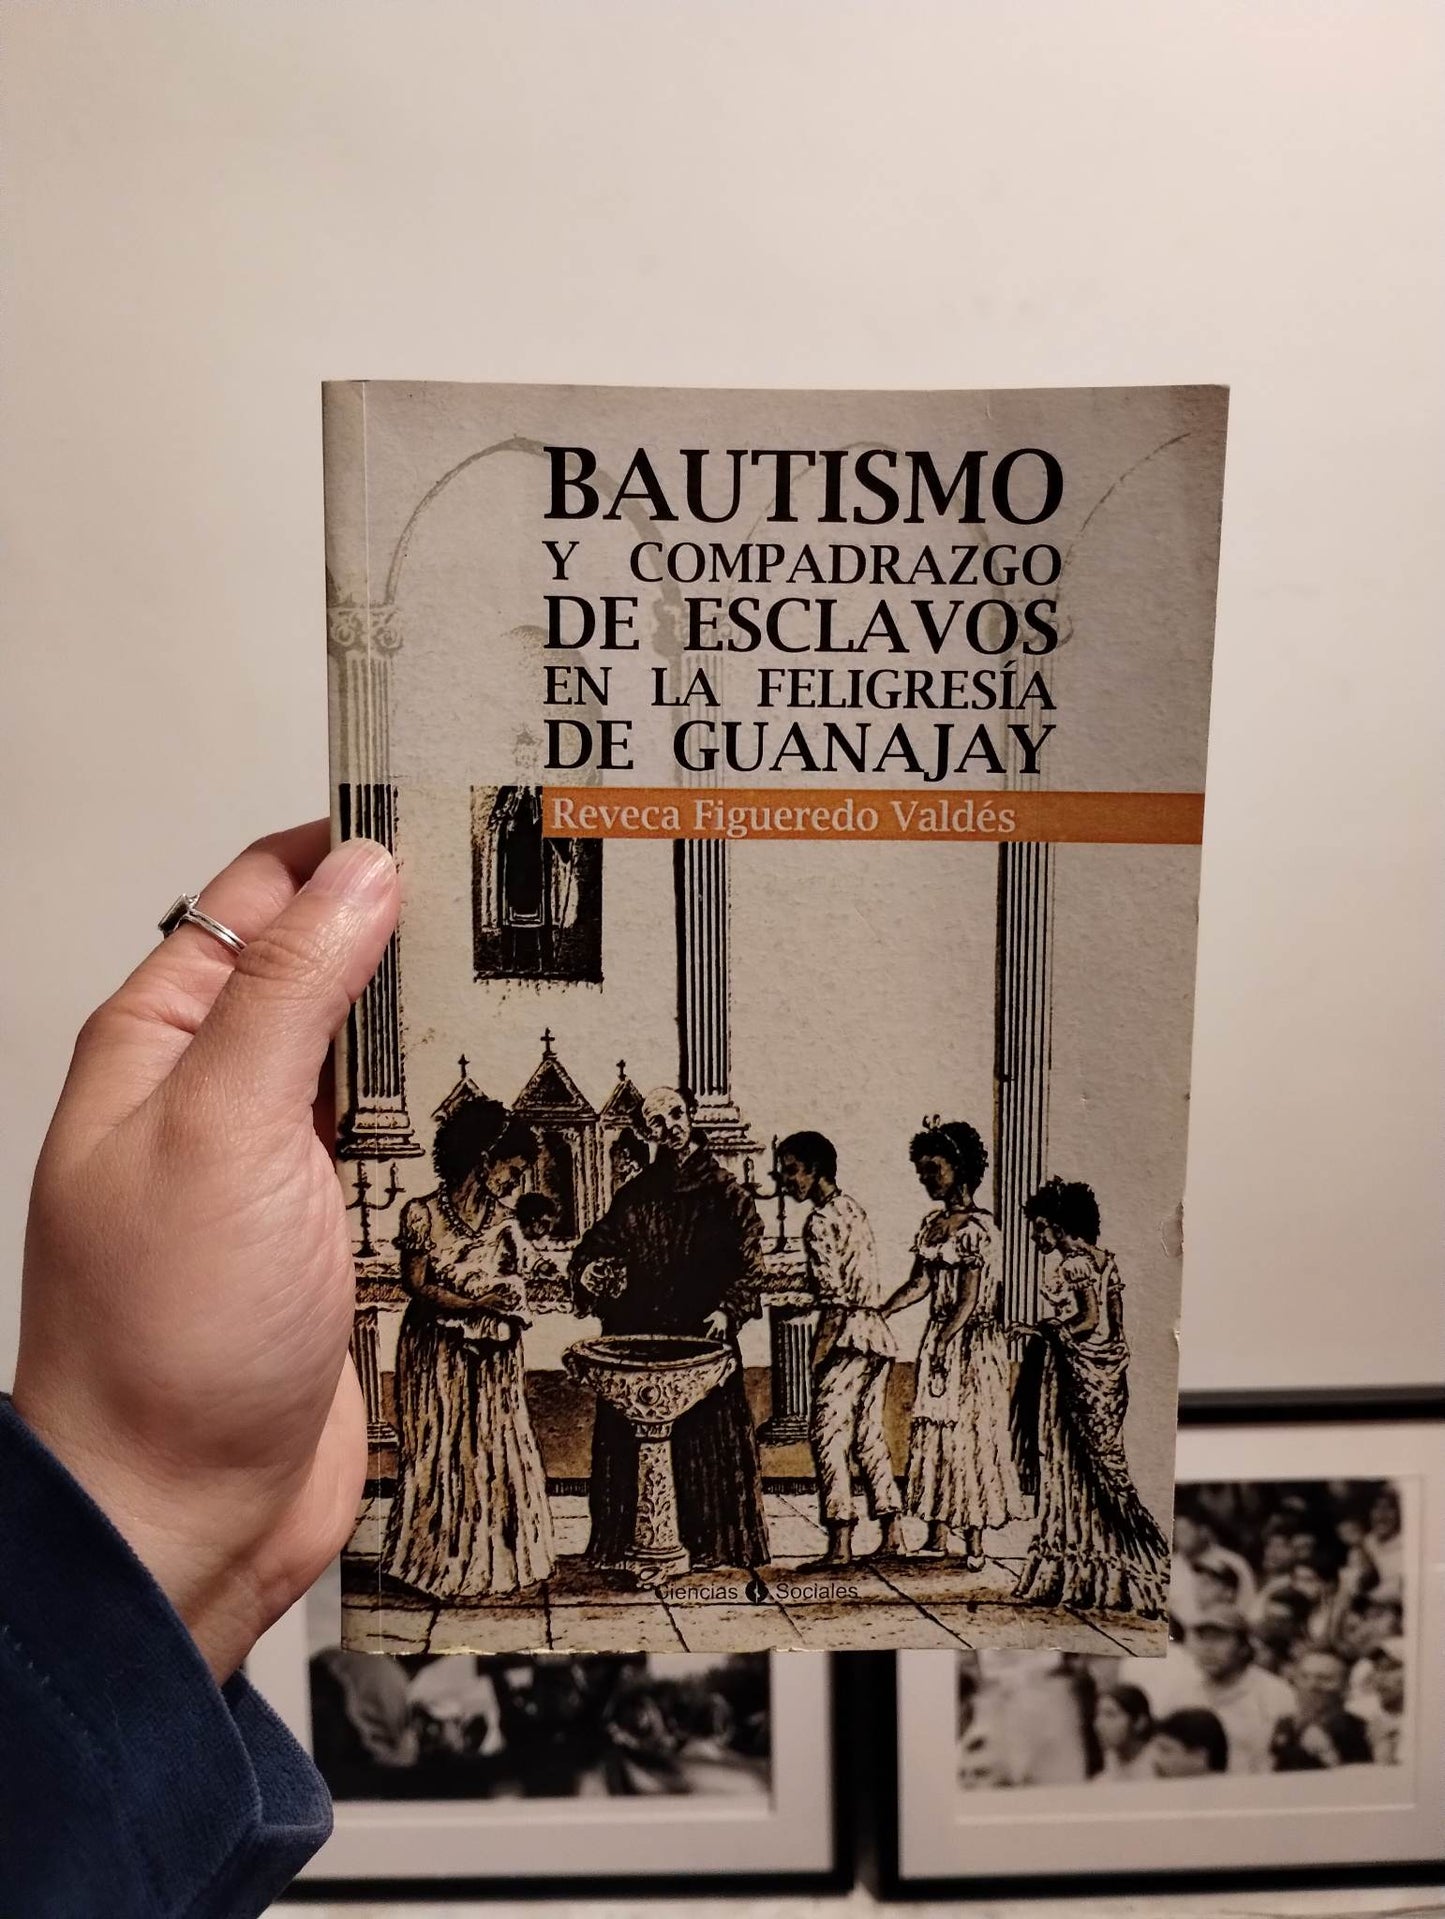 Bautismo y Compadrazgo de Esclavos en la Feligresía de Guanajay por Reveca Figueredo Valdes